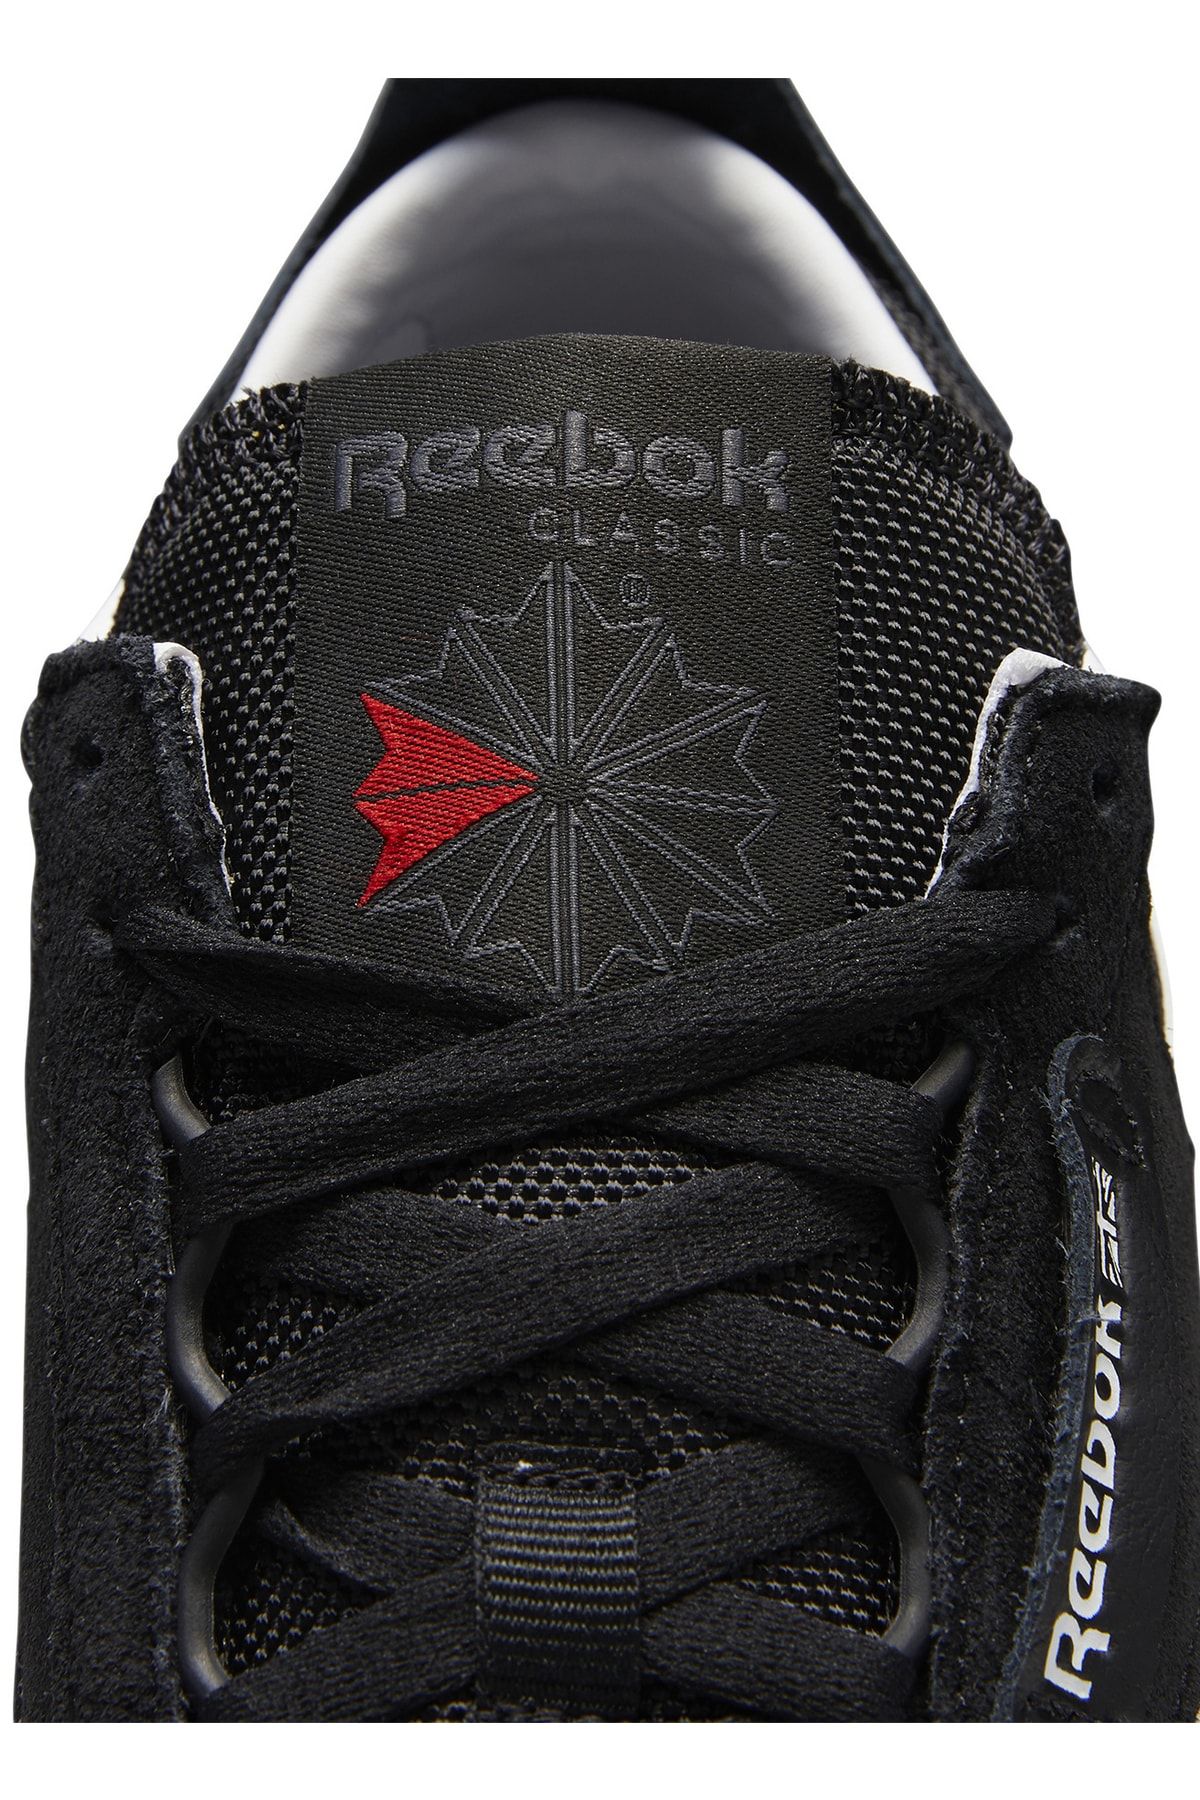 Reebok S24169 Cl Legacy کفش سبک زندگی مردان سیاه